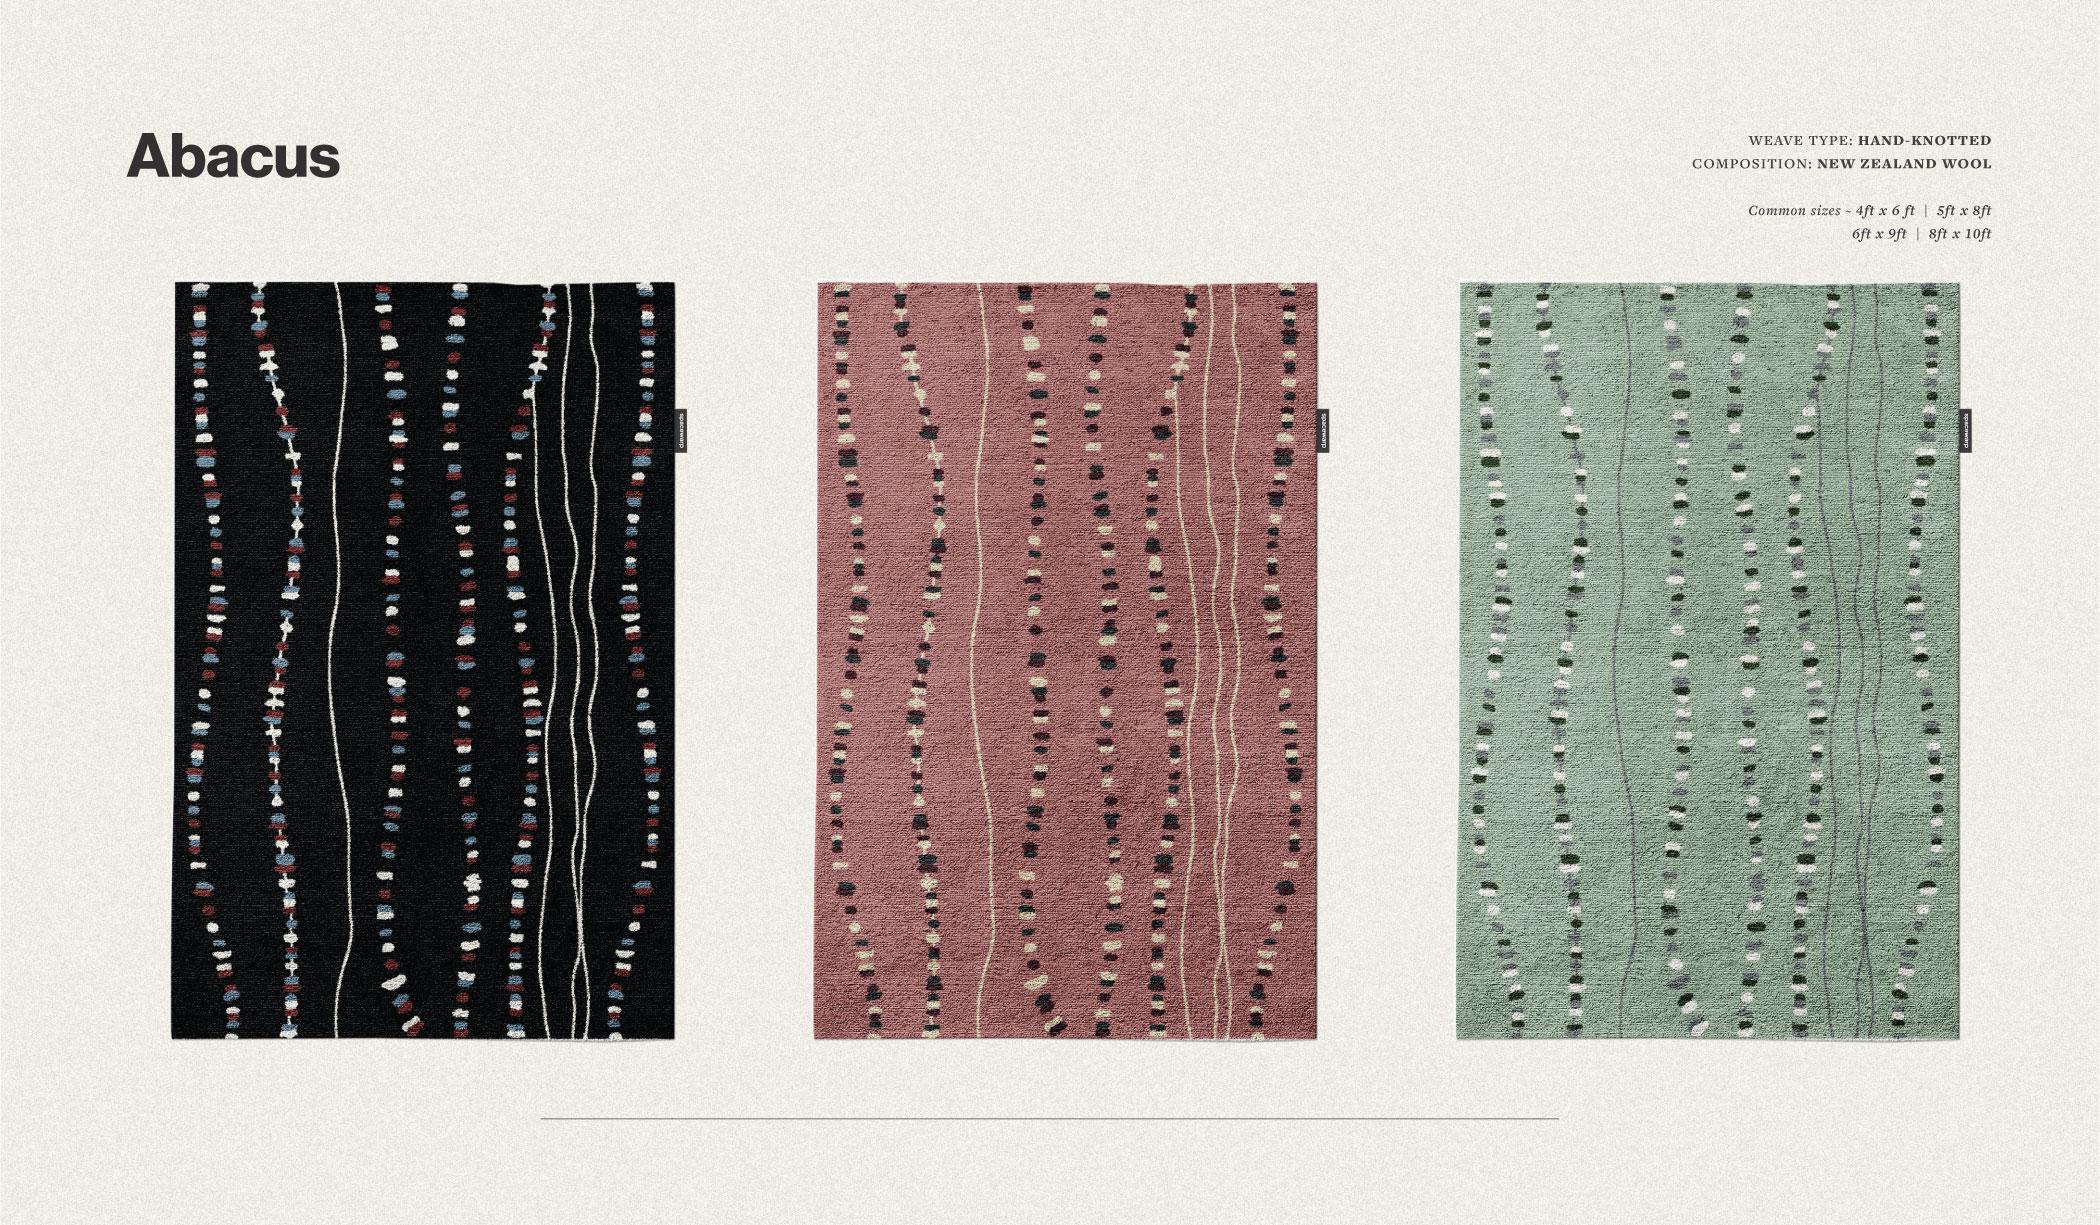 Bunte Perlen vor einem kahlen Hintergrund.  Die einzelnen Perlen des Designs und die Knoten fügen sich zu diesem minimalistischen handgeknüpften Teppich zusammen. Abacus gibt es auch in 4 verschiedenen Farbvarianten: rosa, schwarz, beige und grün.